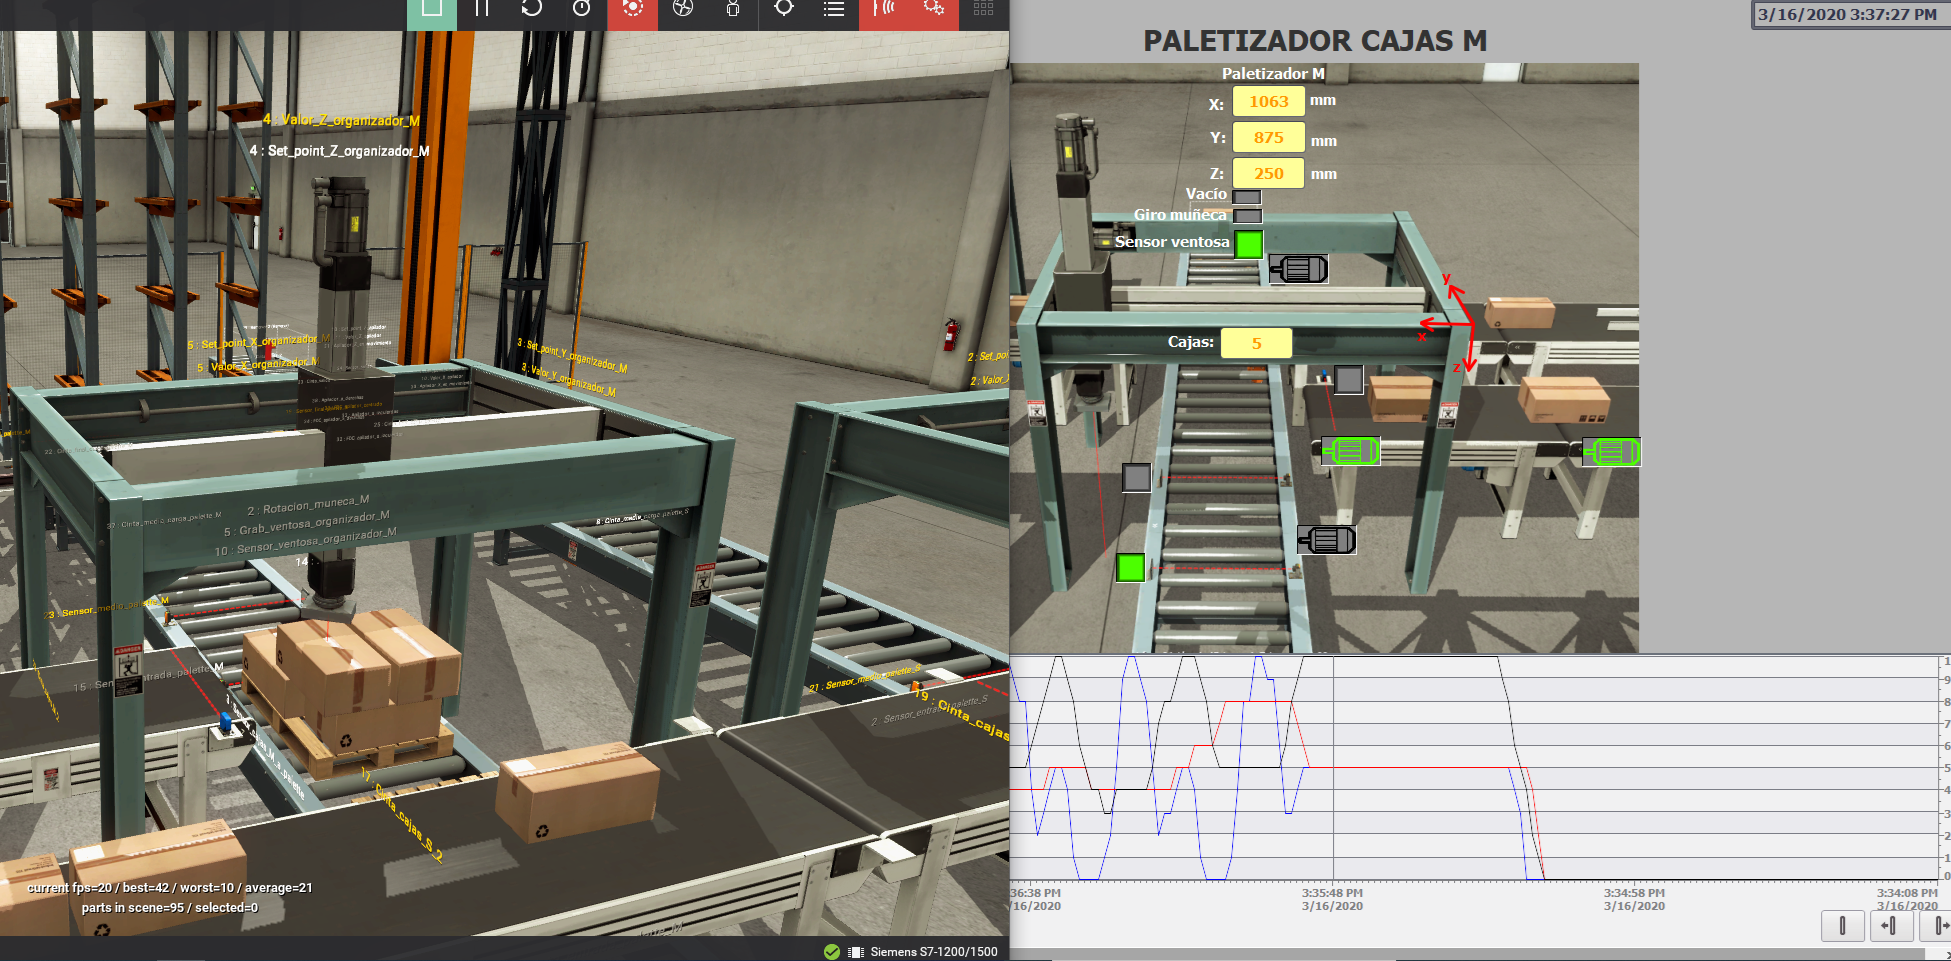 Figura 36. Izquierda: Simulador paletizador M Derecha: HMI con posición-garra y n° cajas